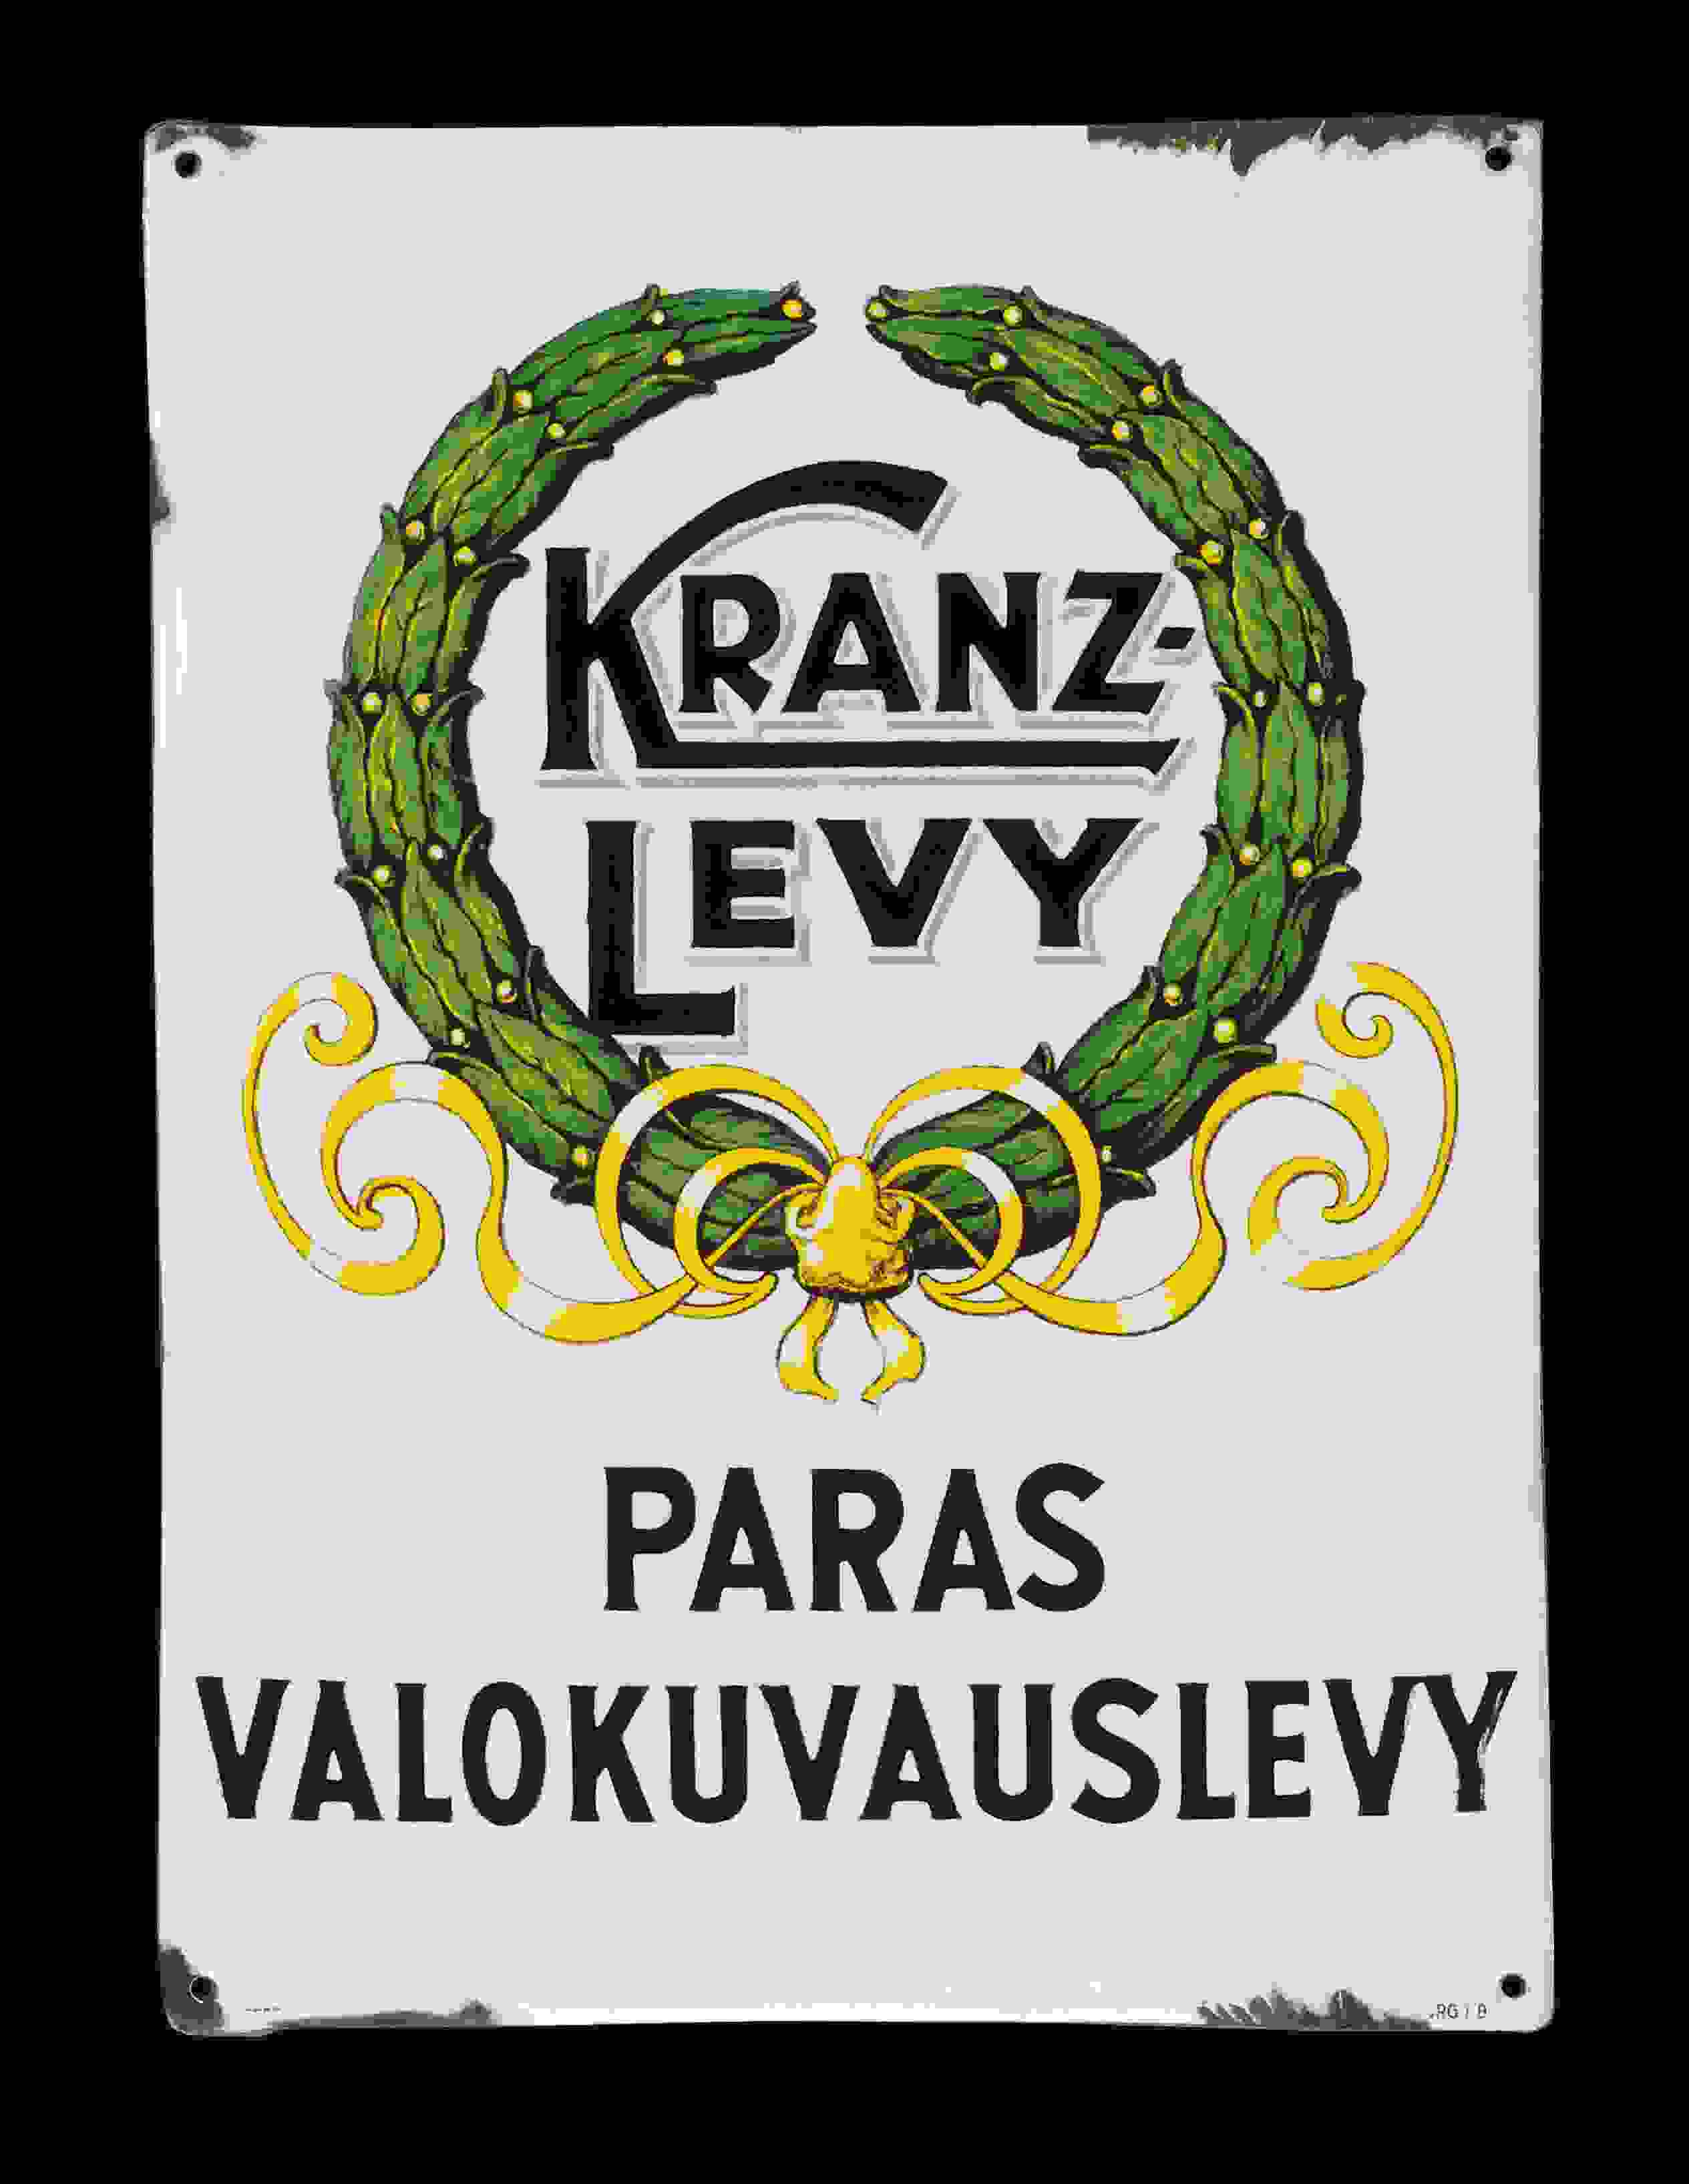 Kranz-Levy 